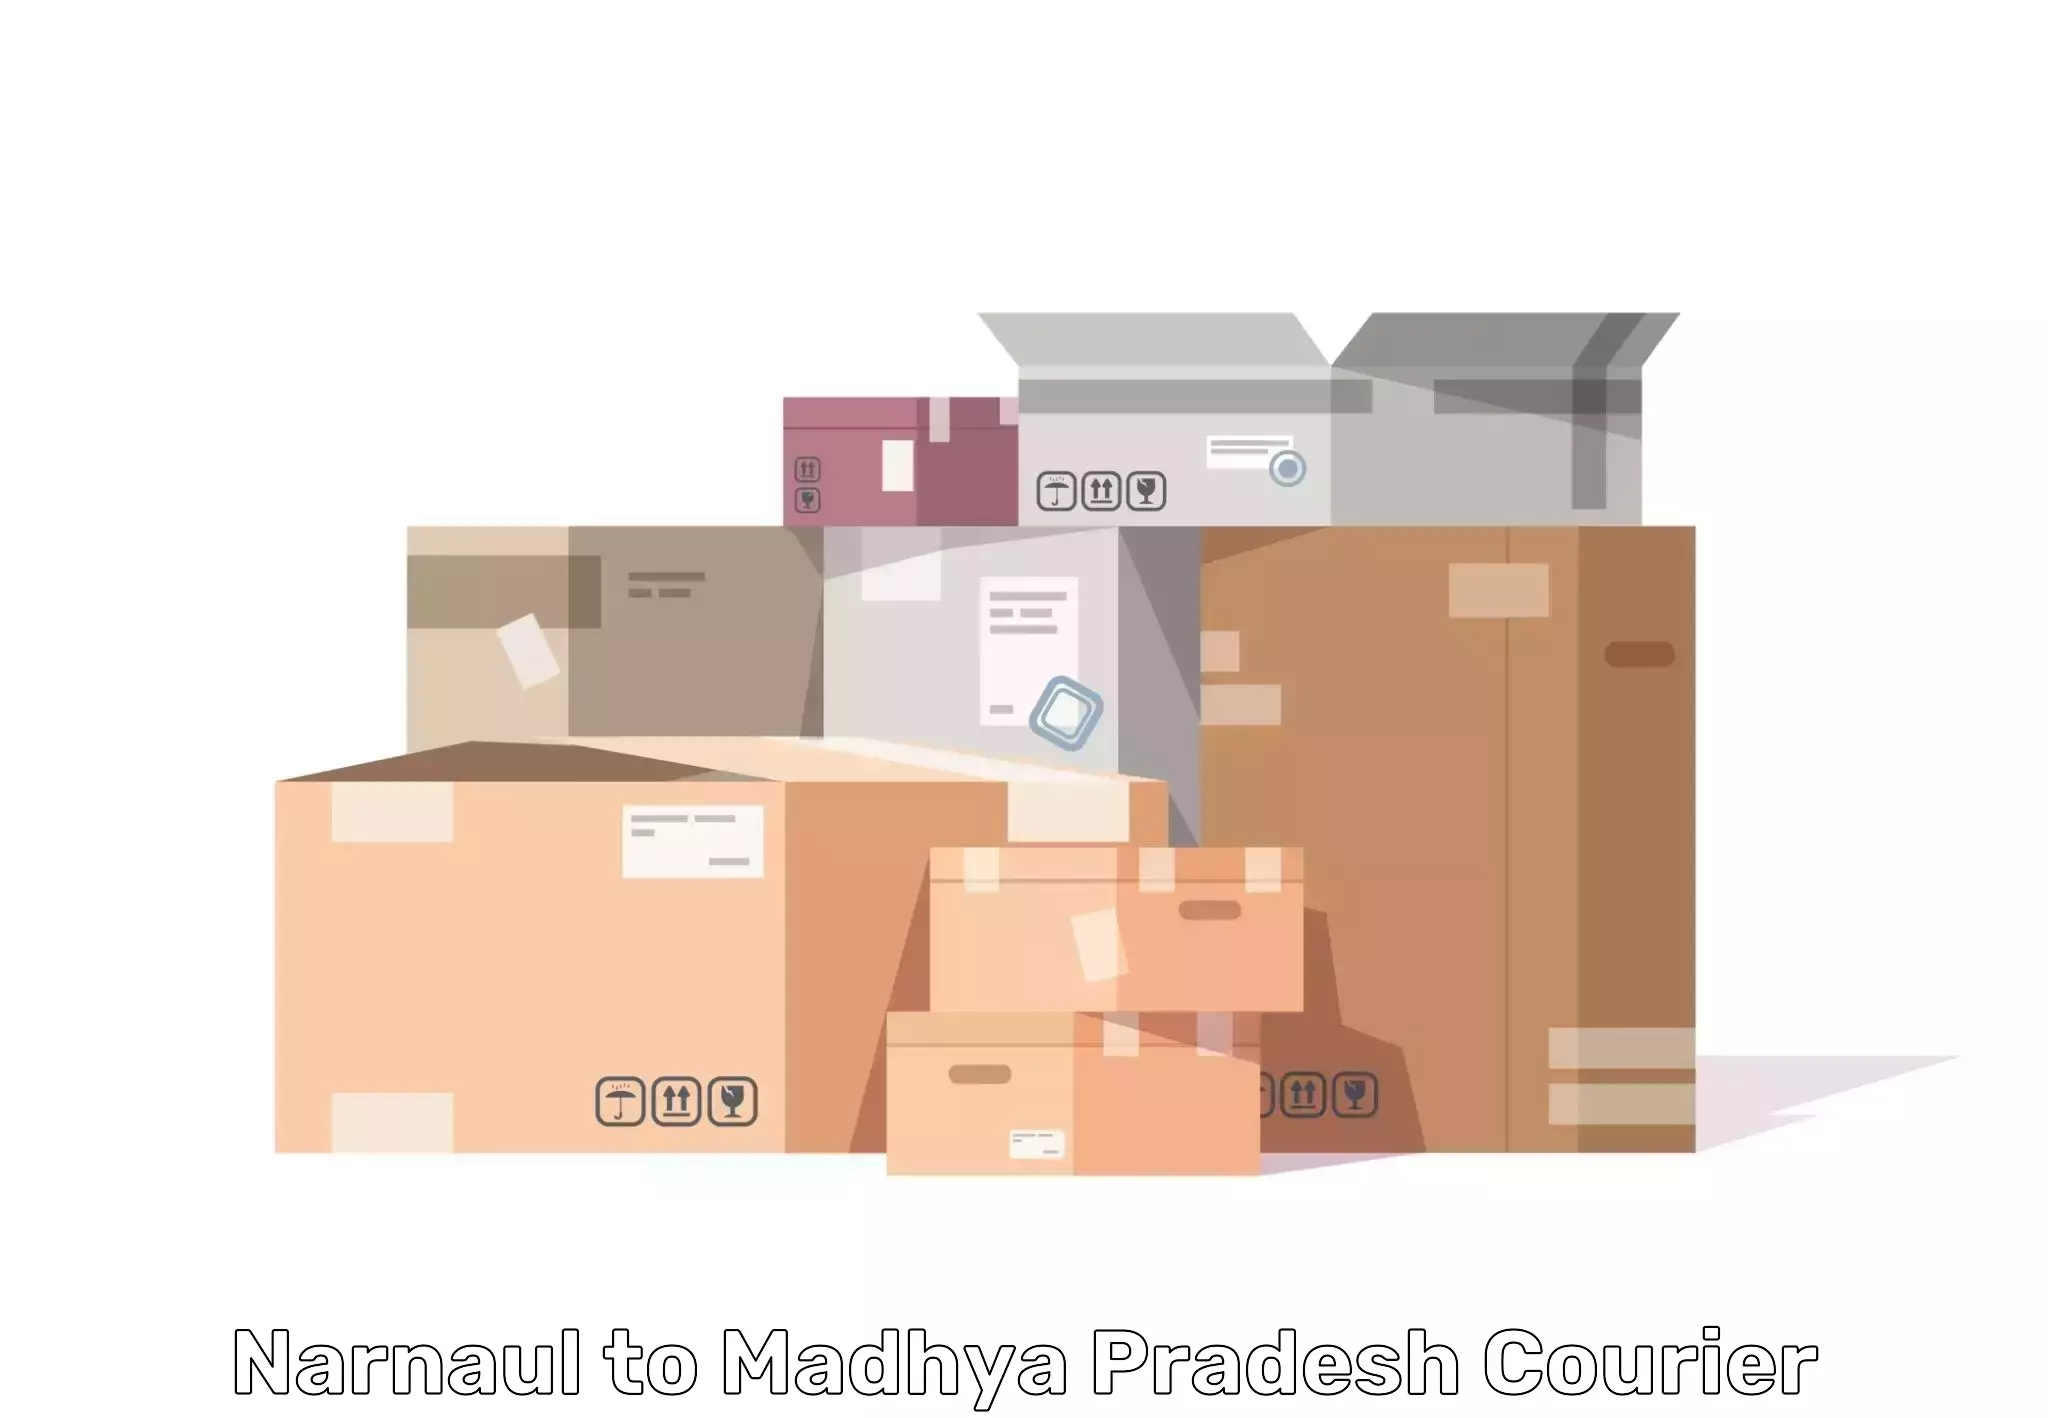 Furniture moving plans in Narnaul to Narsinghgarh